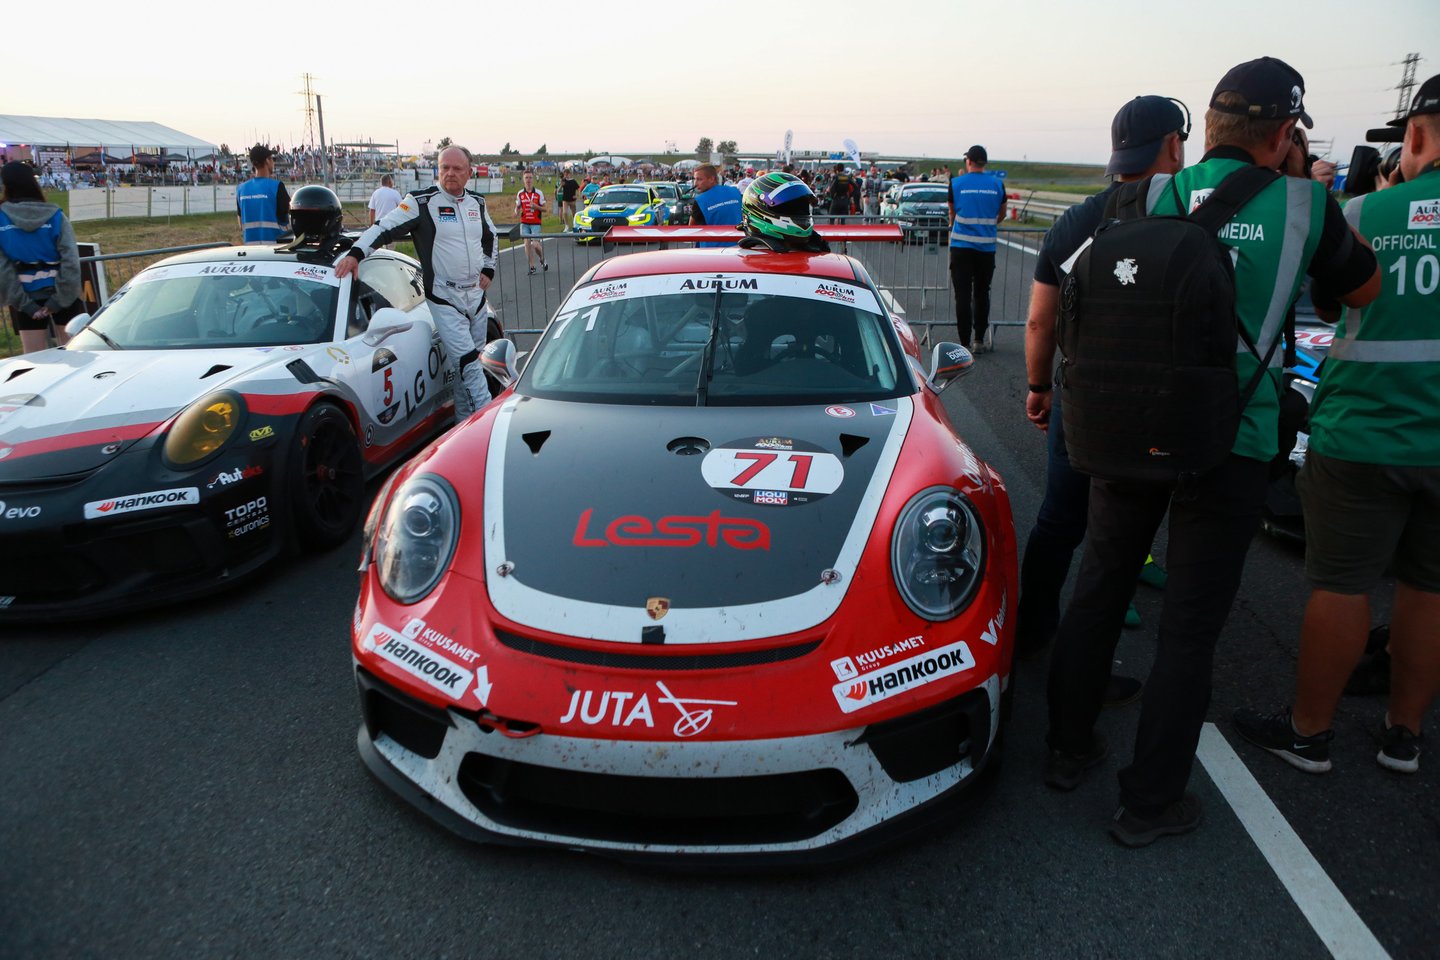 Lenktynes nugalėjo automobiliu Porsche vaziavusi Circle K komanda.<br> G.Bitvinsko nuotr.